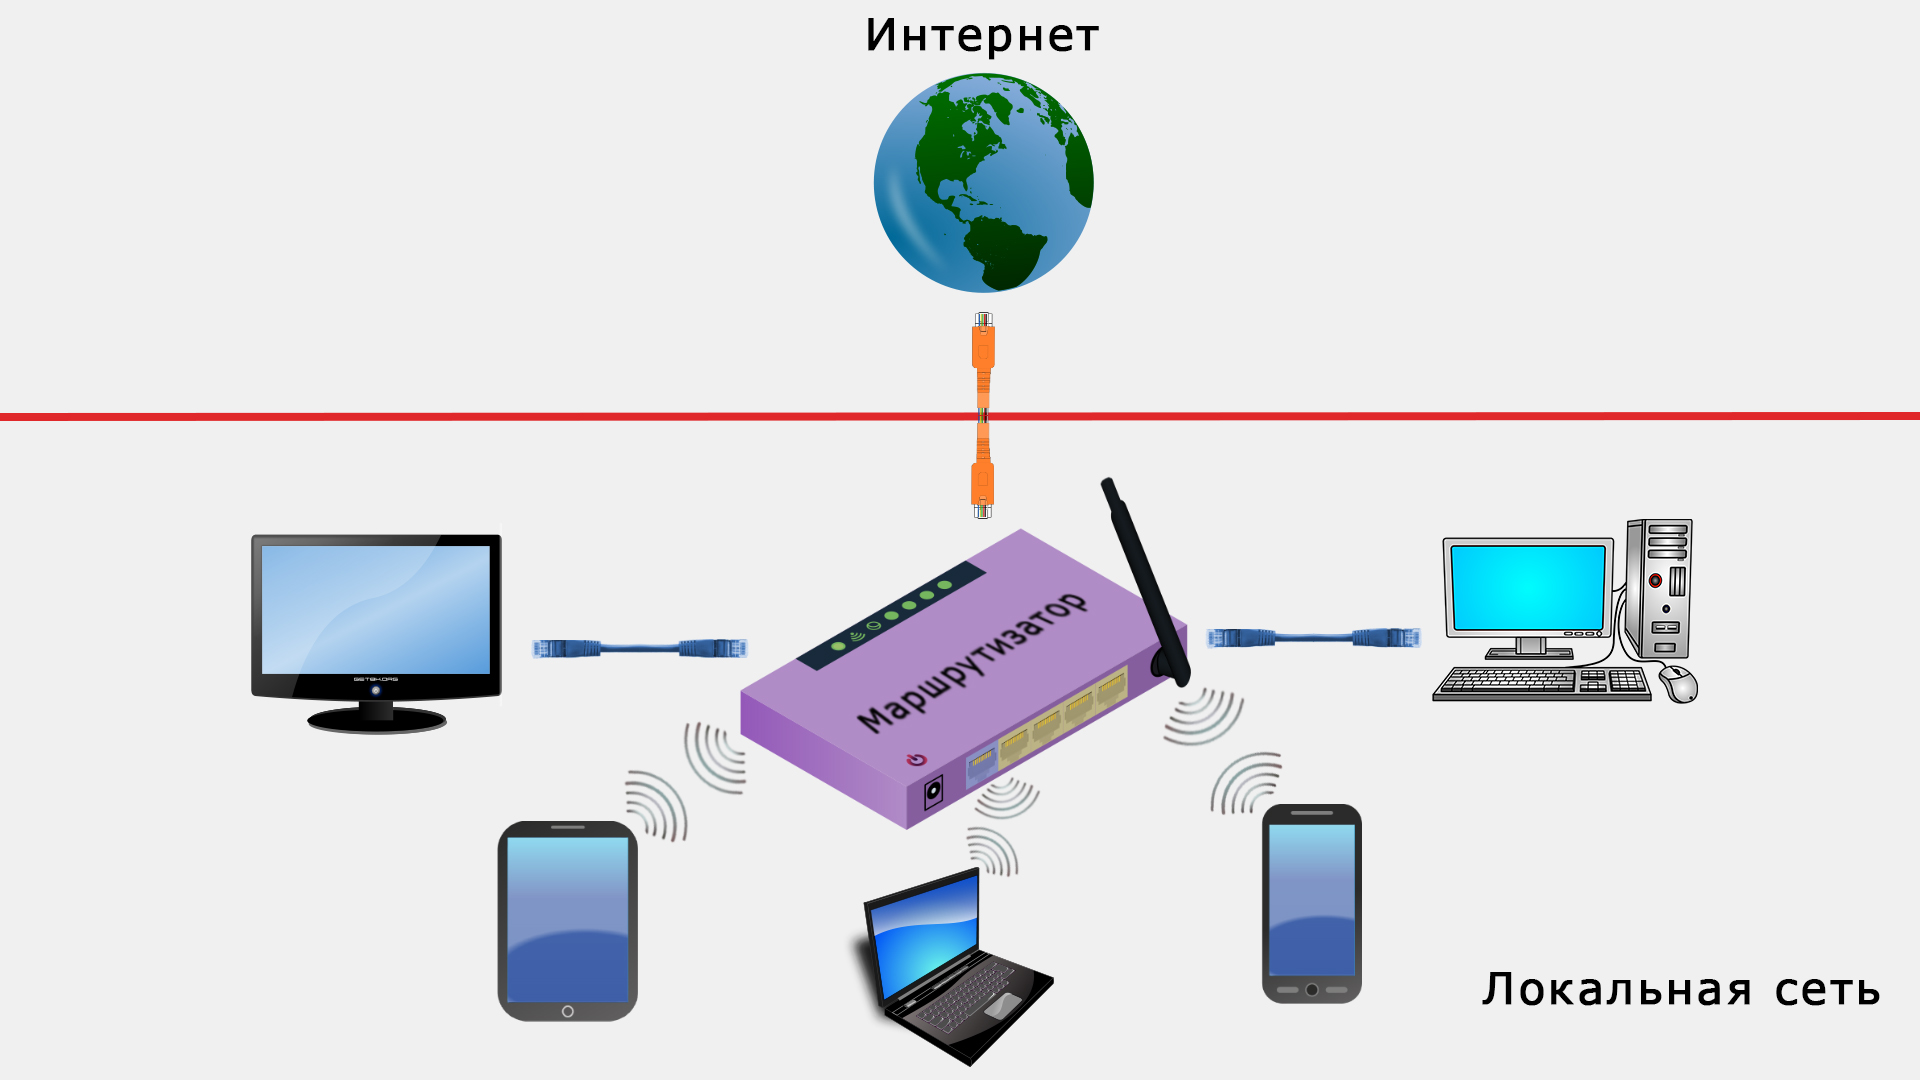 Схема локальной сети и выход в интернет через провайдера с разных устройств с помощью маршрутизатора.